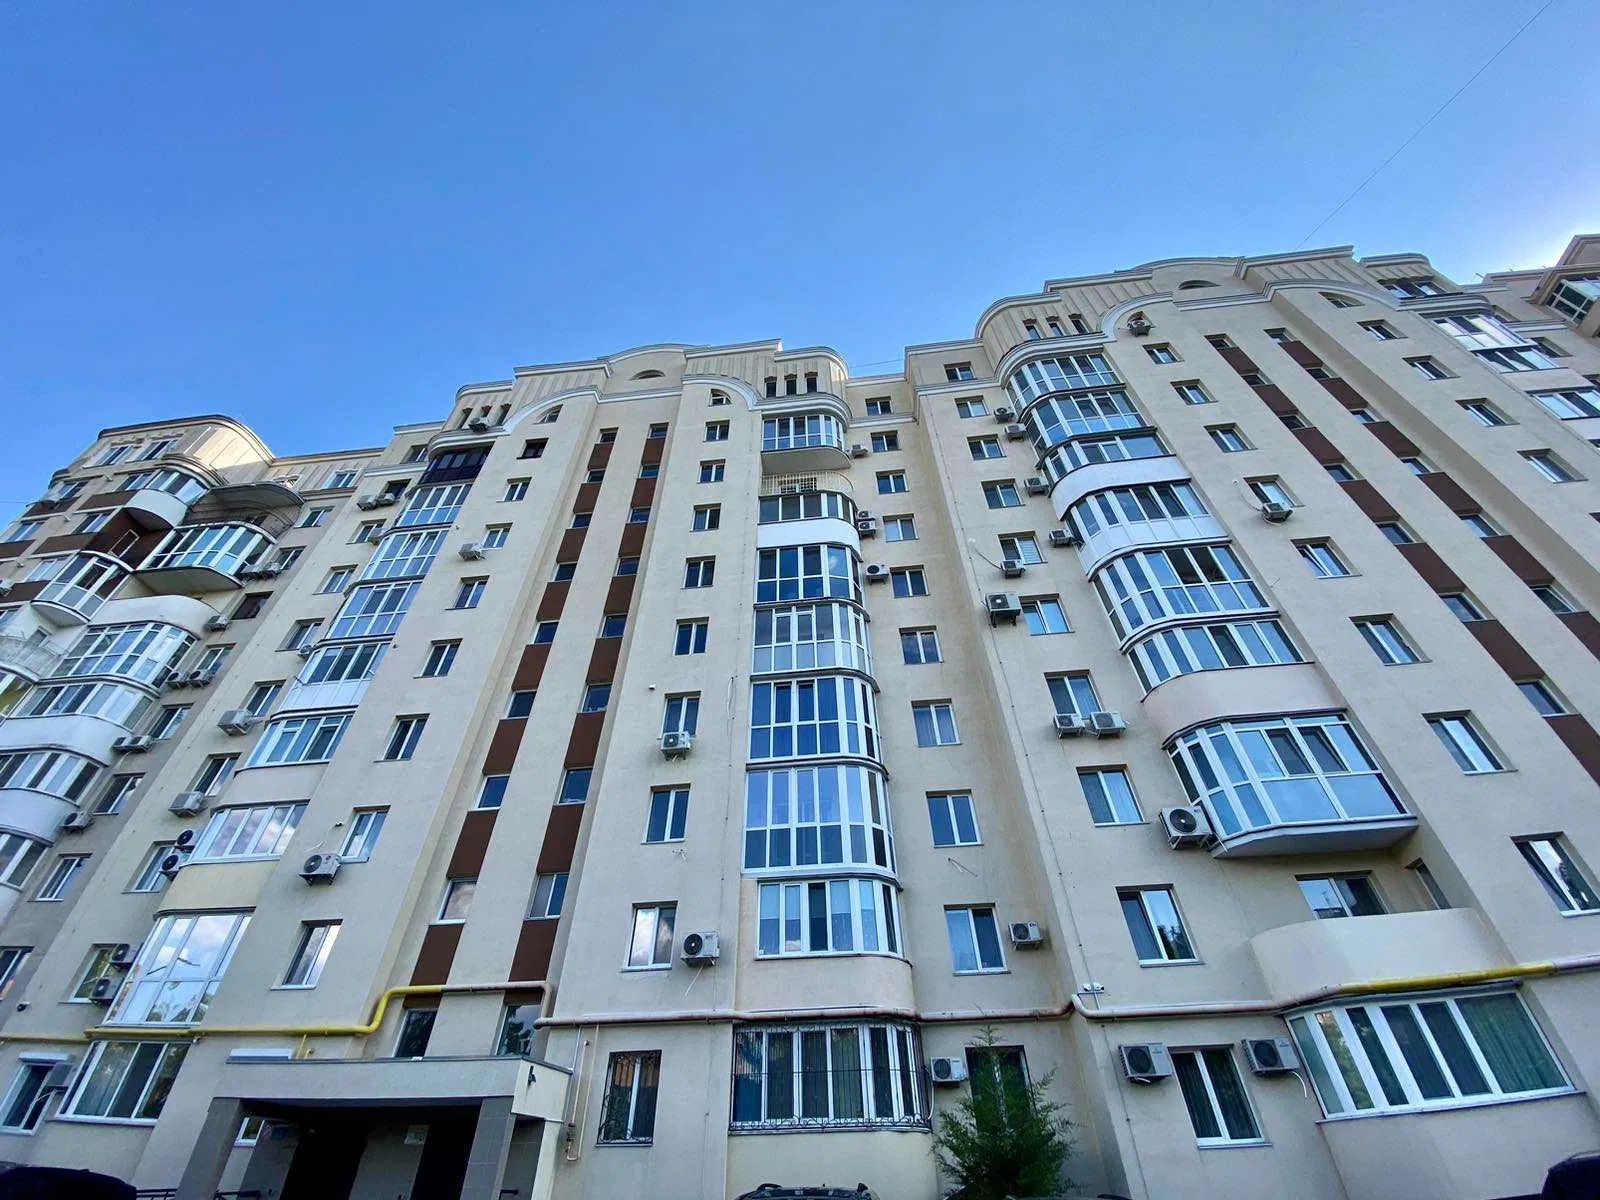 Области, где продают самые дешевые квартиры в Украине - Недвижимость